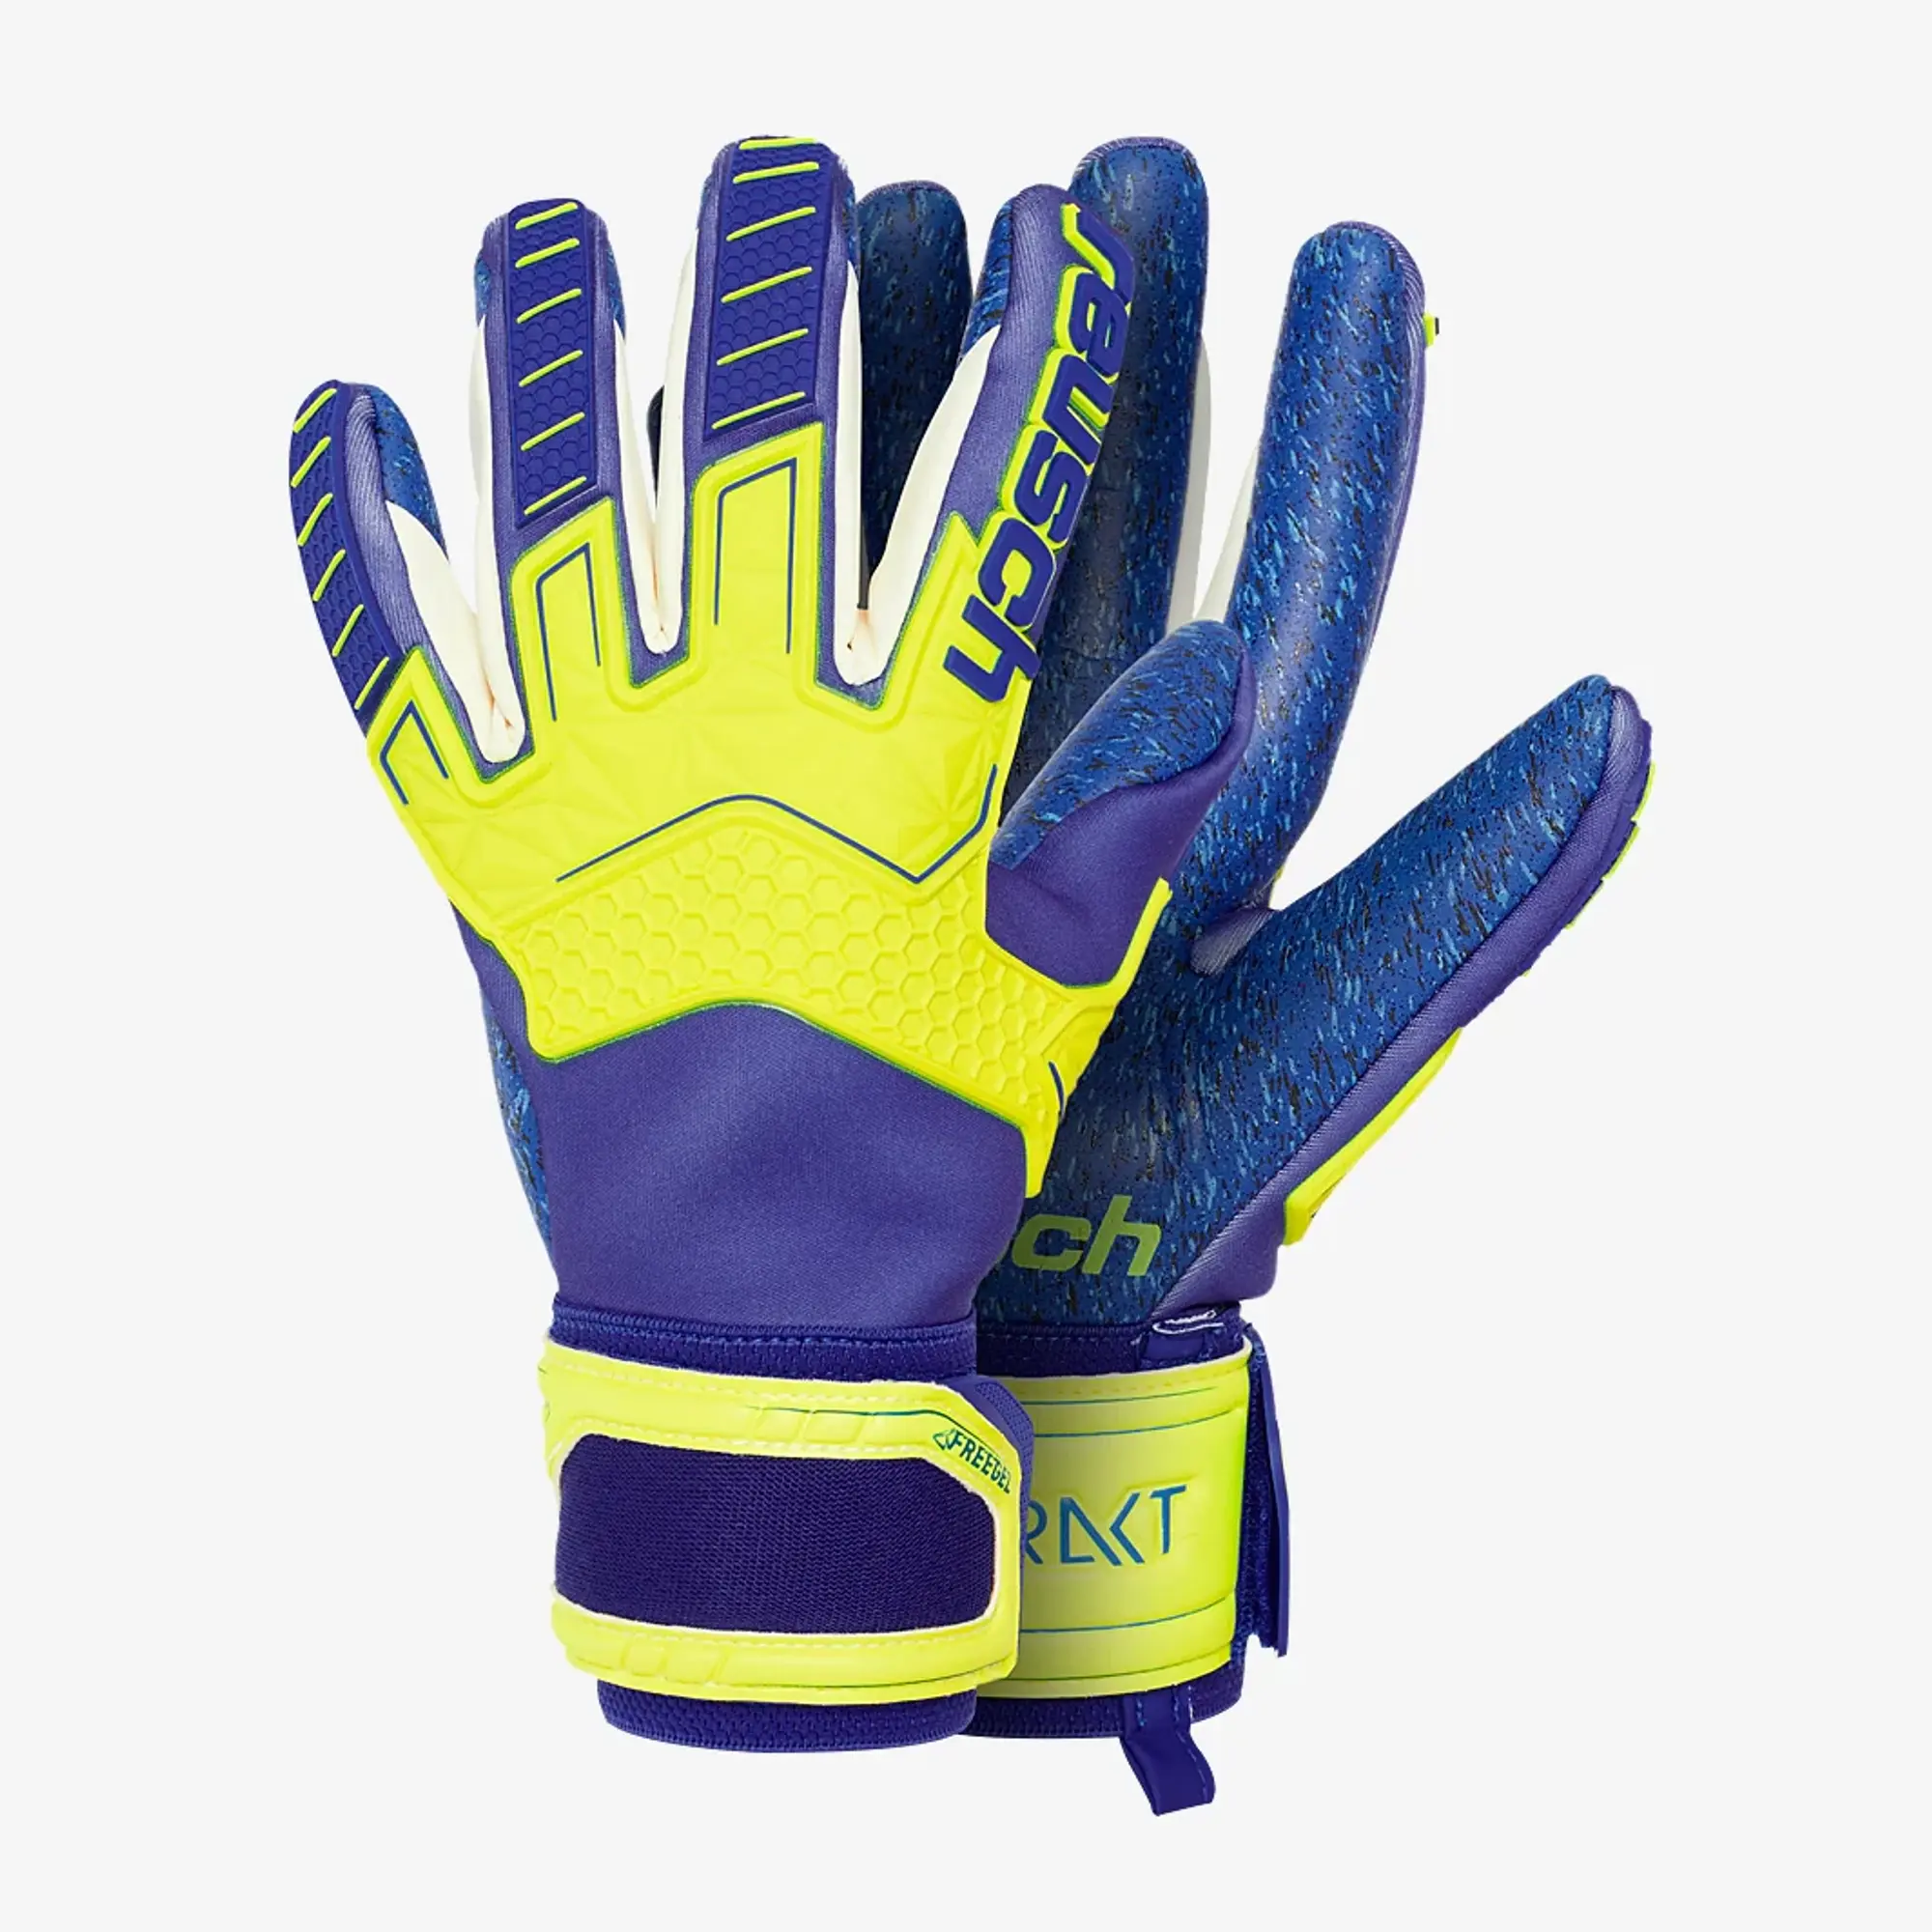 Reusch Attrakt Freegel G3 Fusion Ltd Goalkeeper Gloves